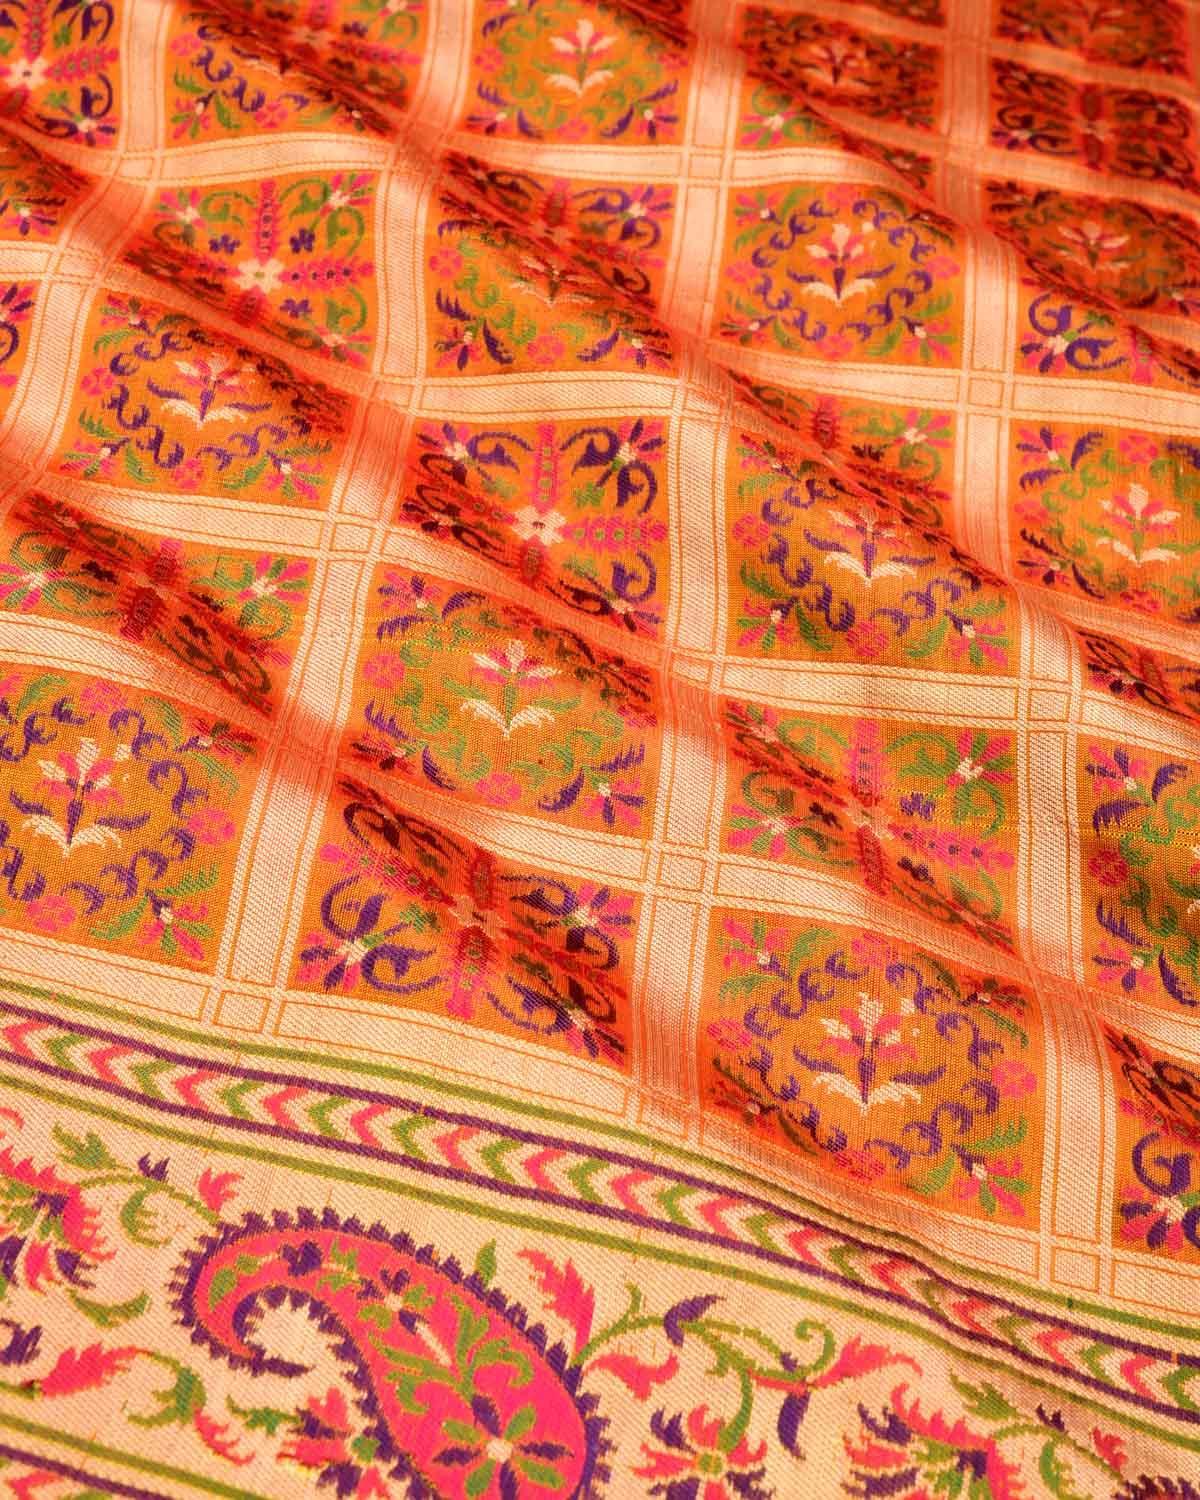 Shot Orange Banarasi Gold Zari and Resham Chequered Cutwork Brocade Handwoven Katan Silk Saree - By HolyWeaves, Benares